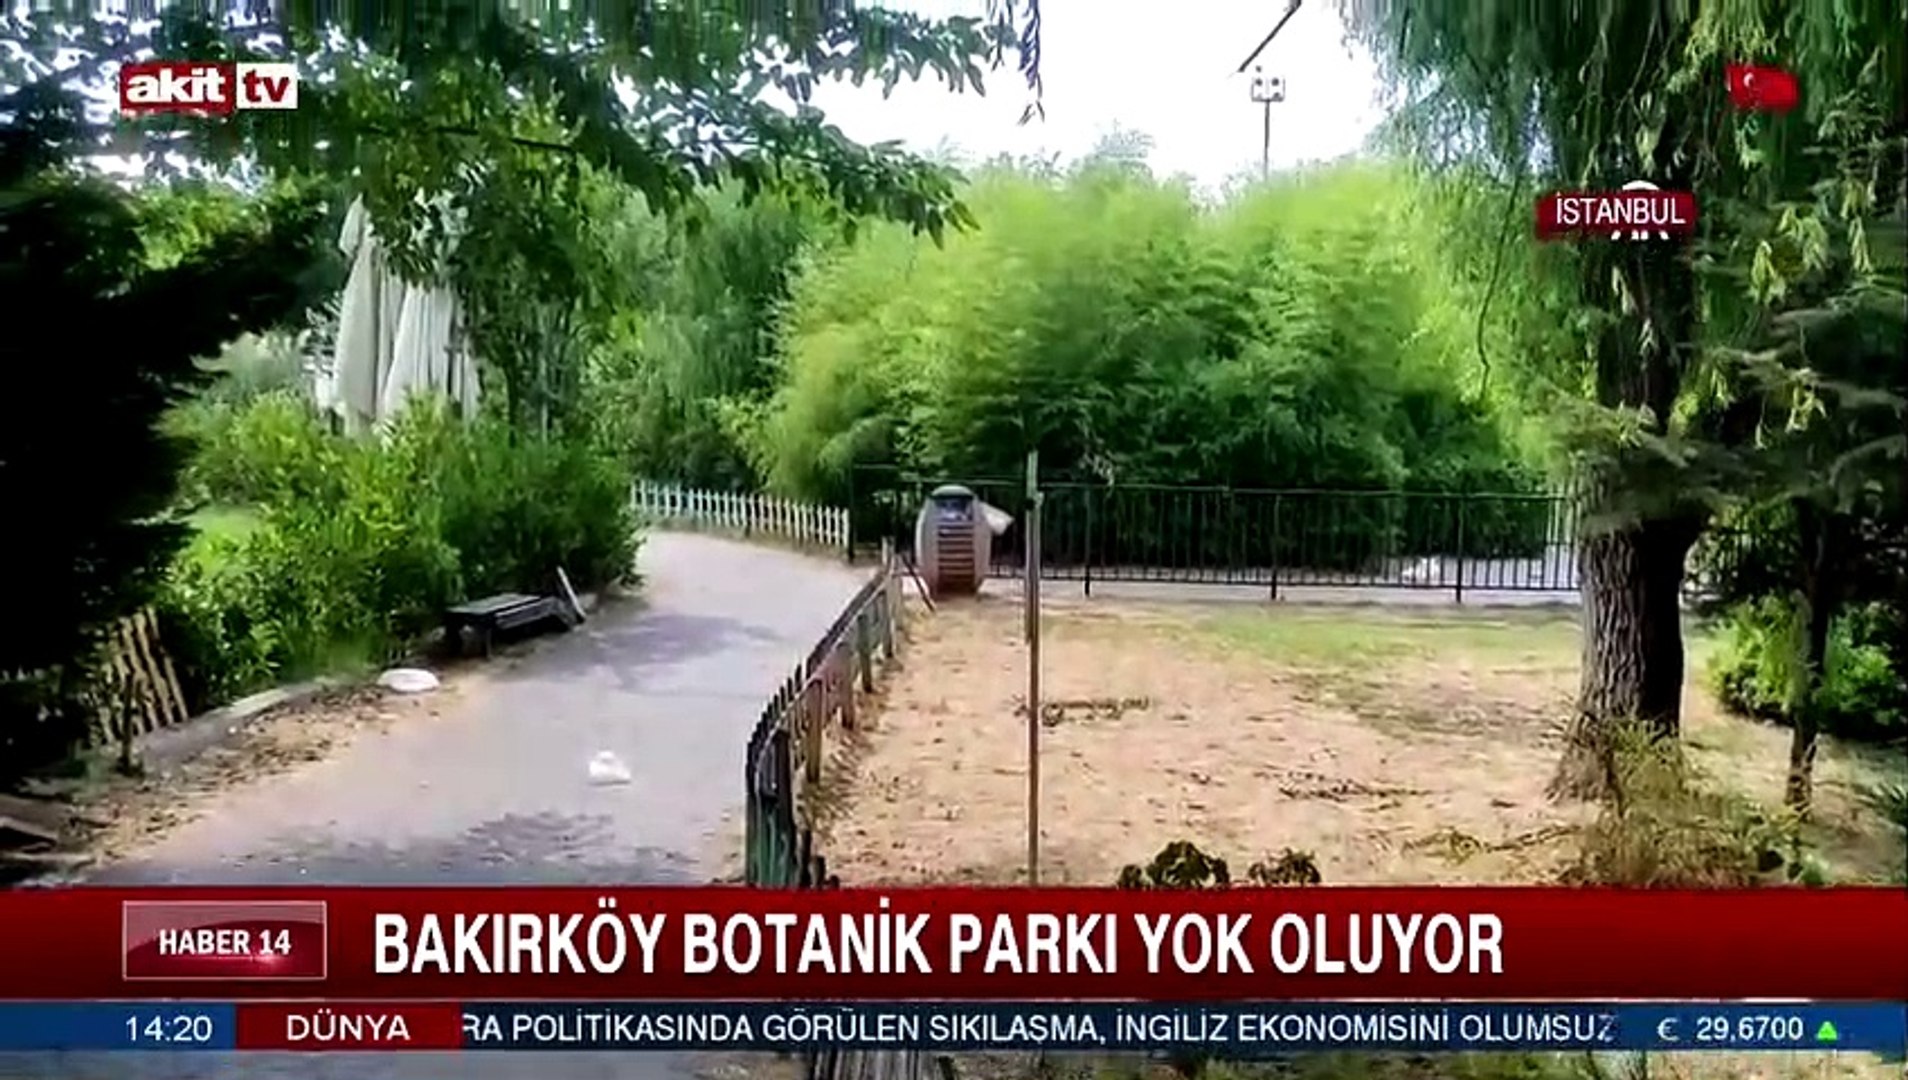 Bakırköy Botanik Parkı yok oluyor - Dailymotion Video